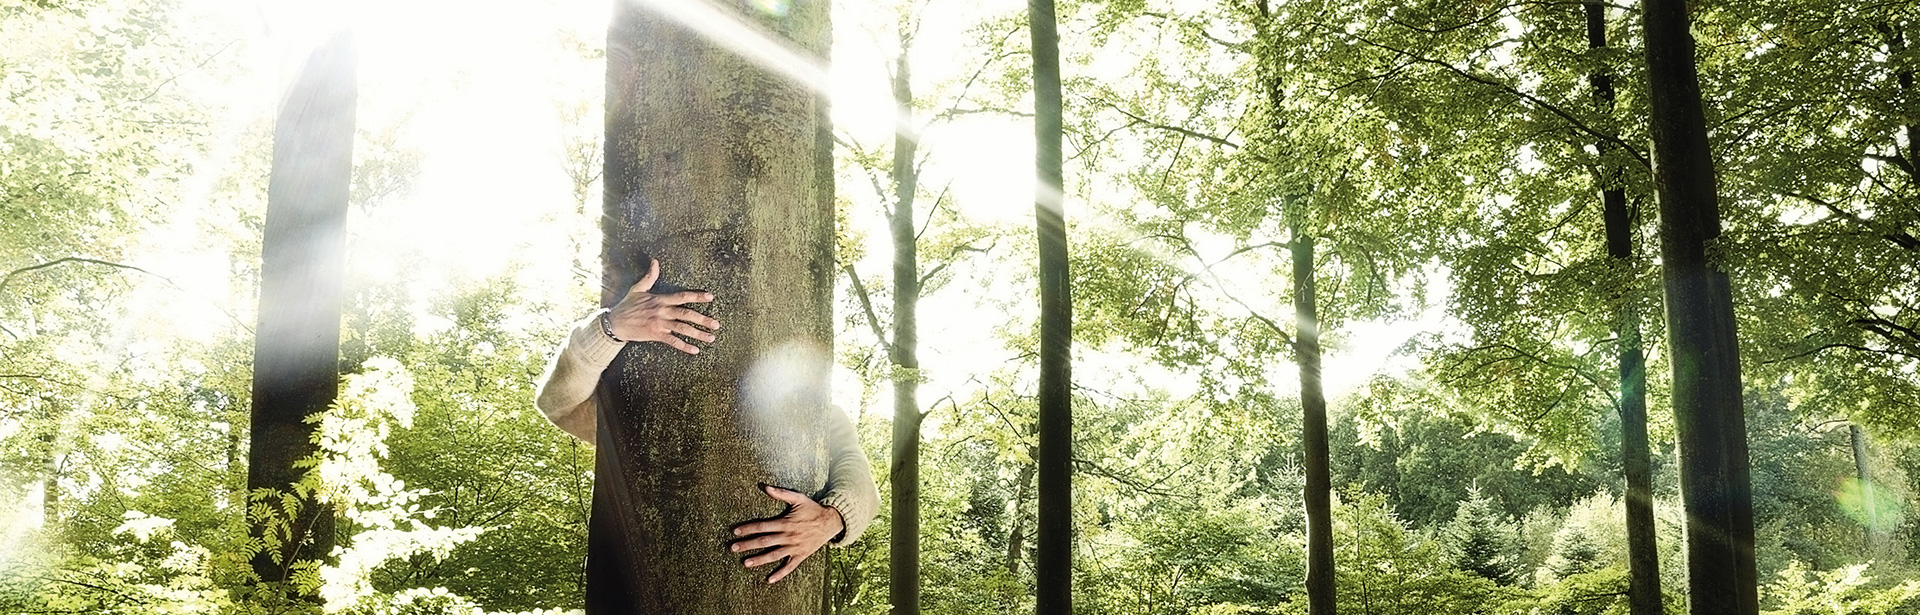 Ein Mensch umarmt einen Baum - Unsere Kampagne für mehr an Morgen denken.